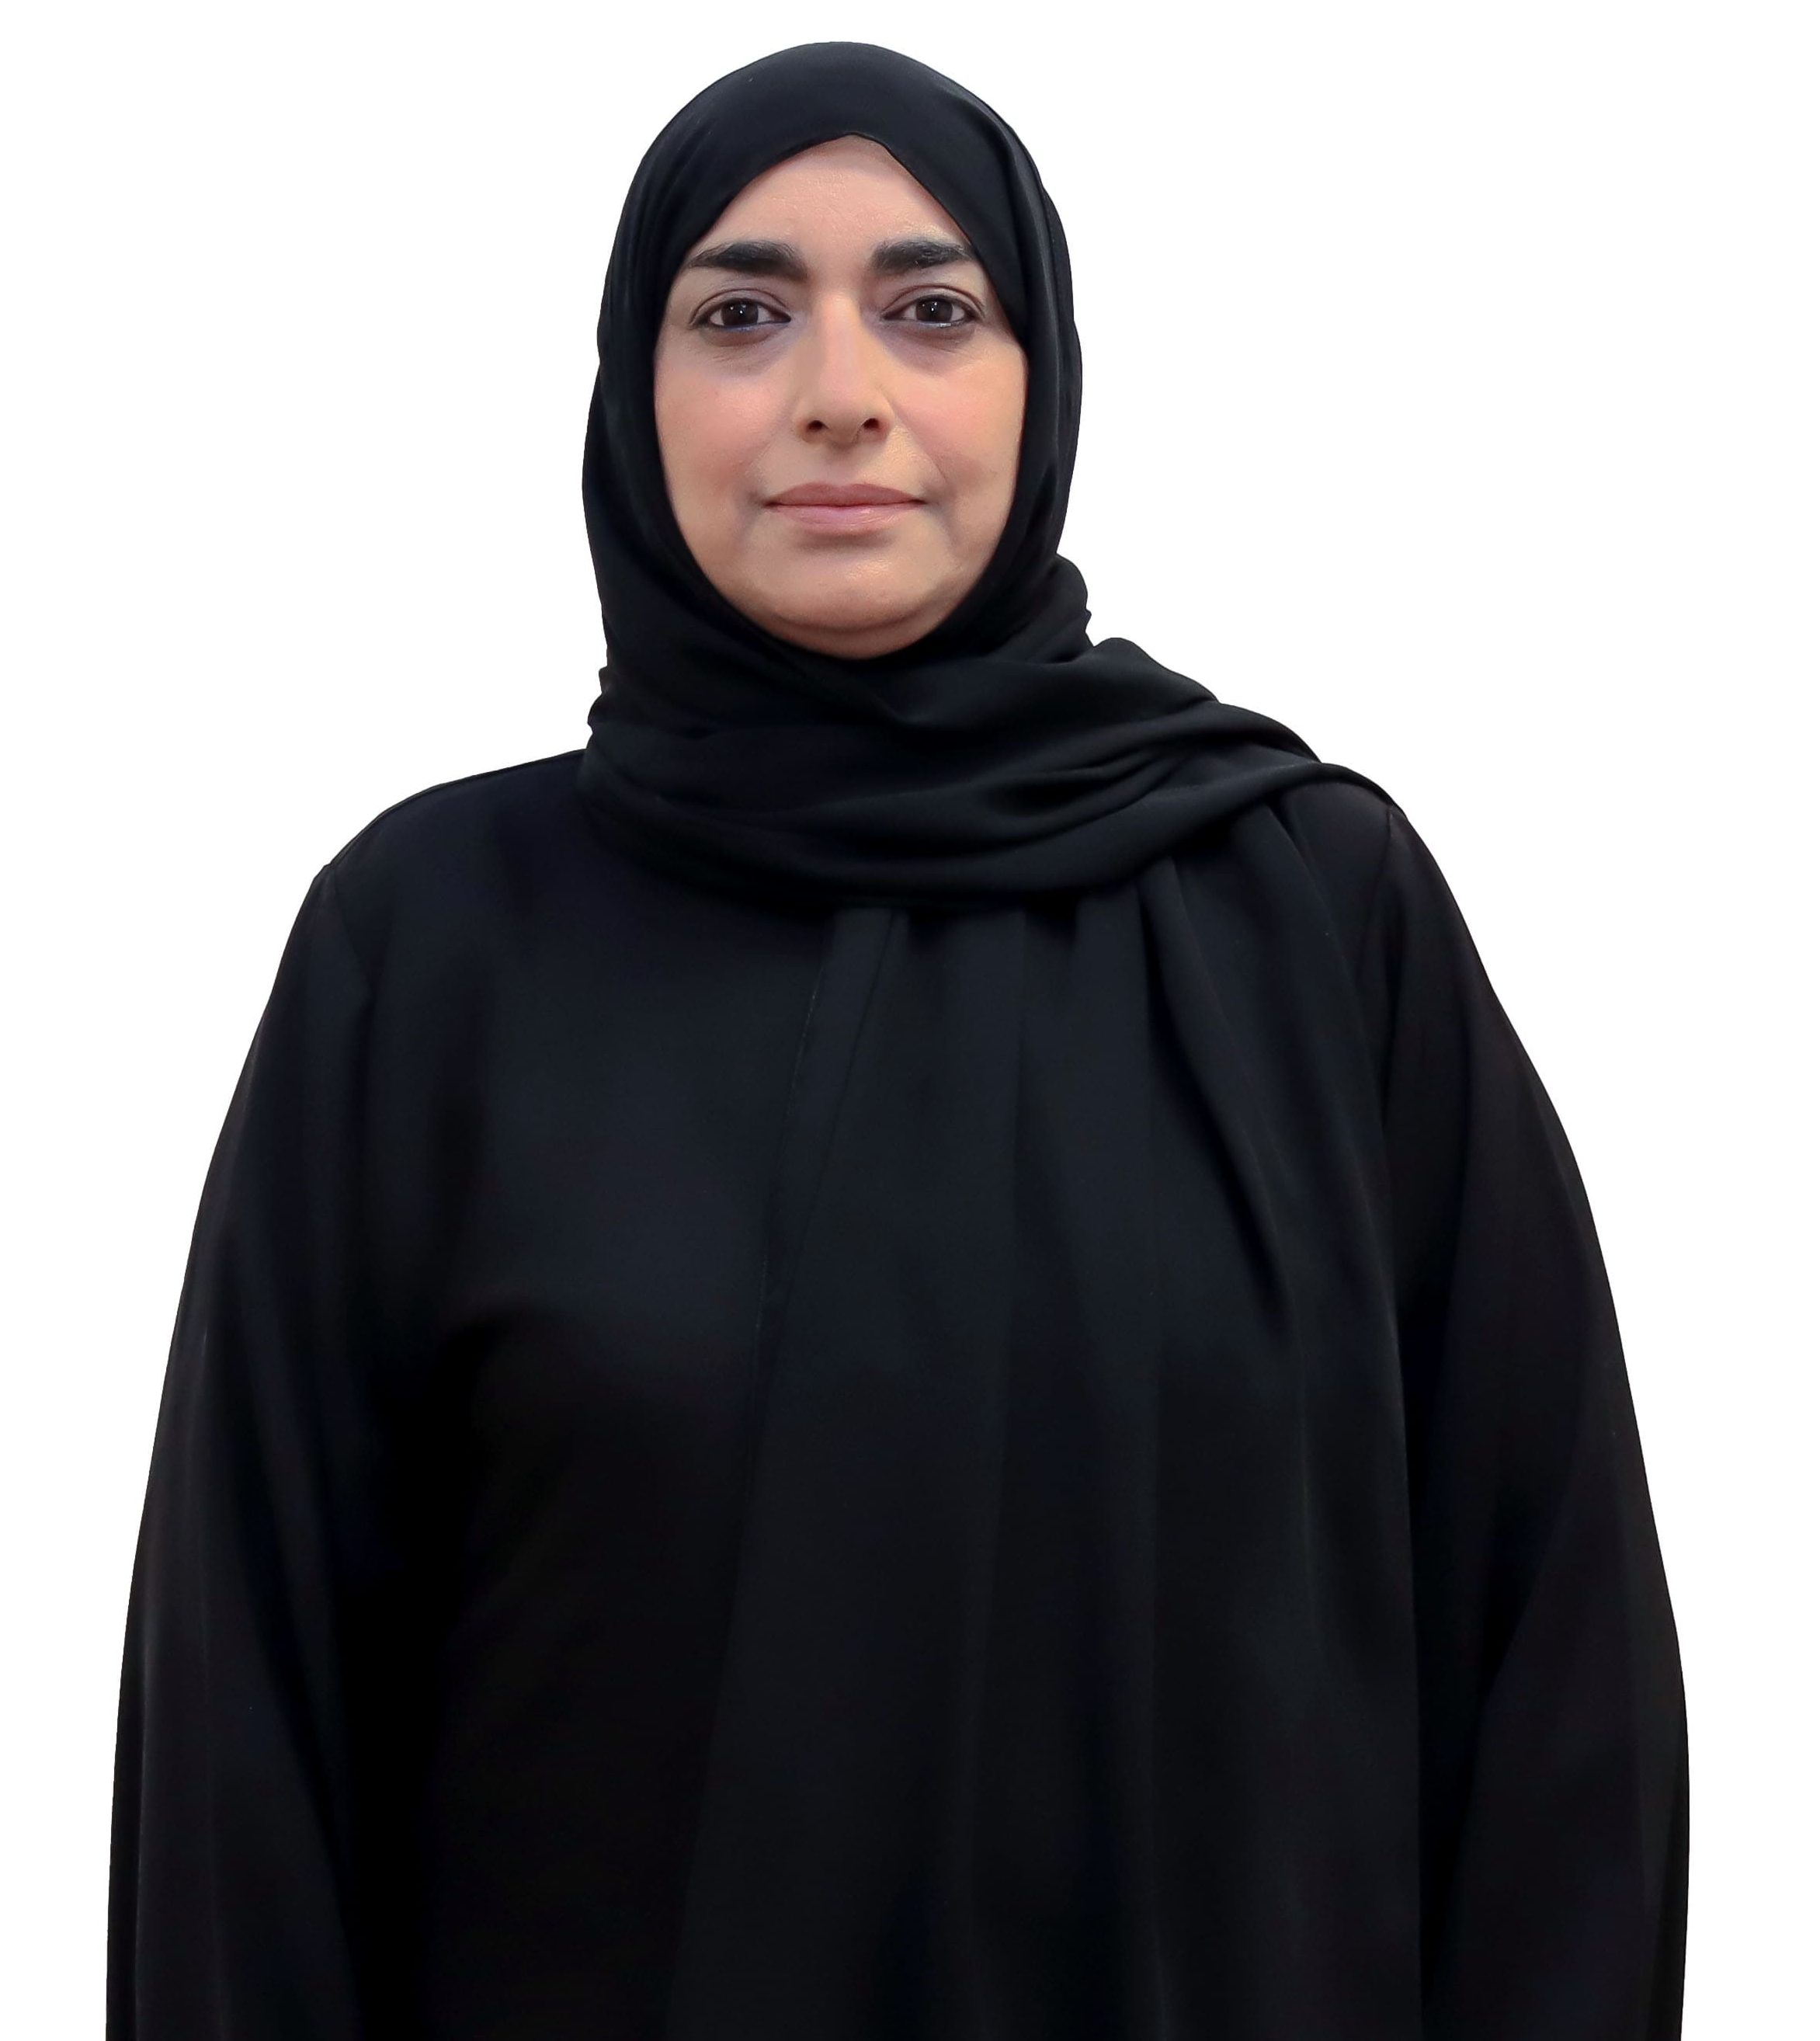 Dr. Zahra Al Sayari